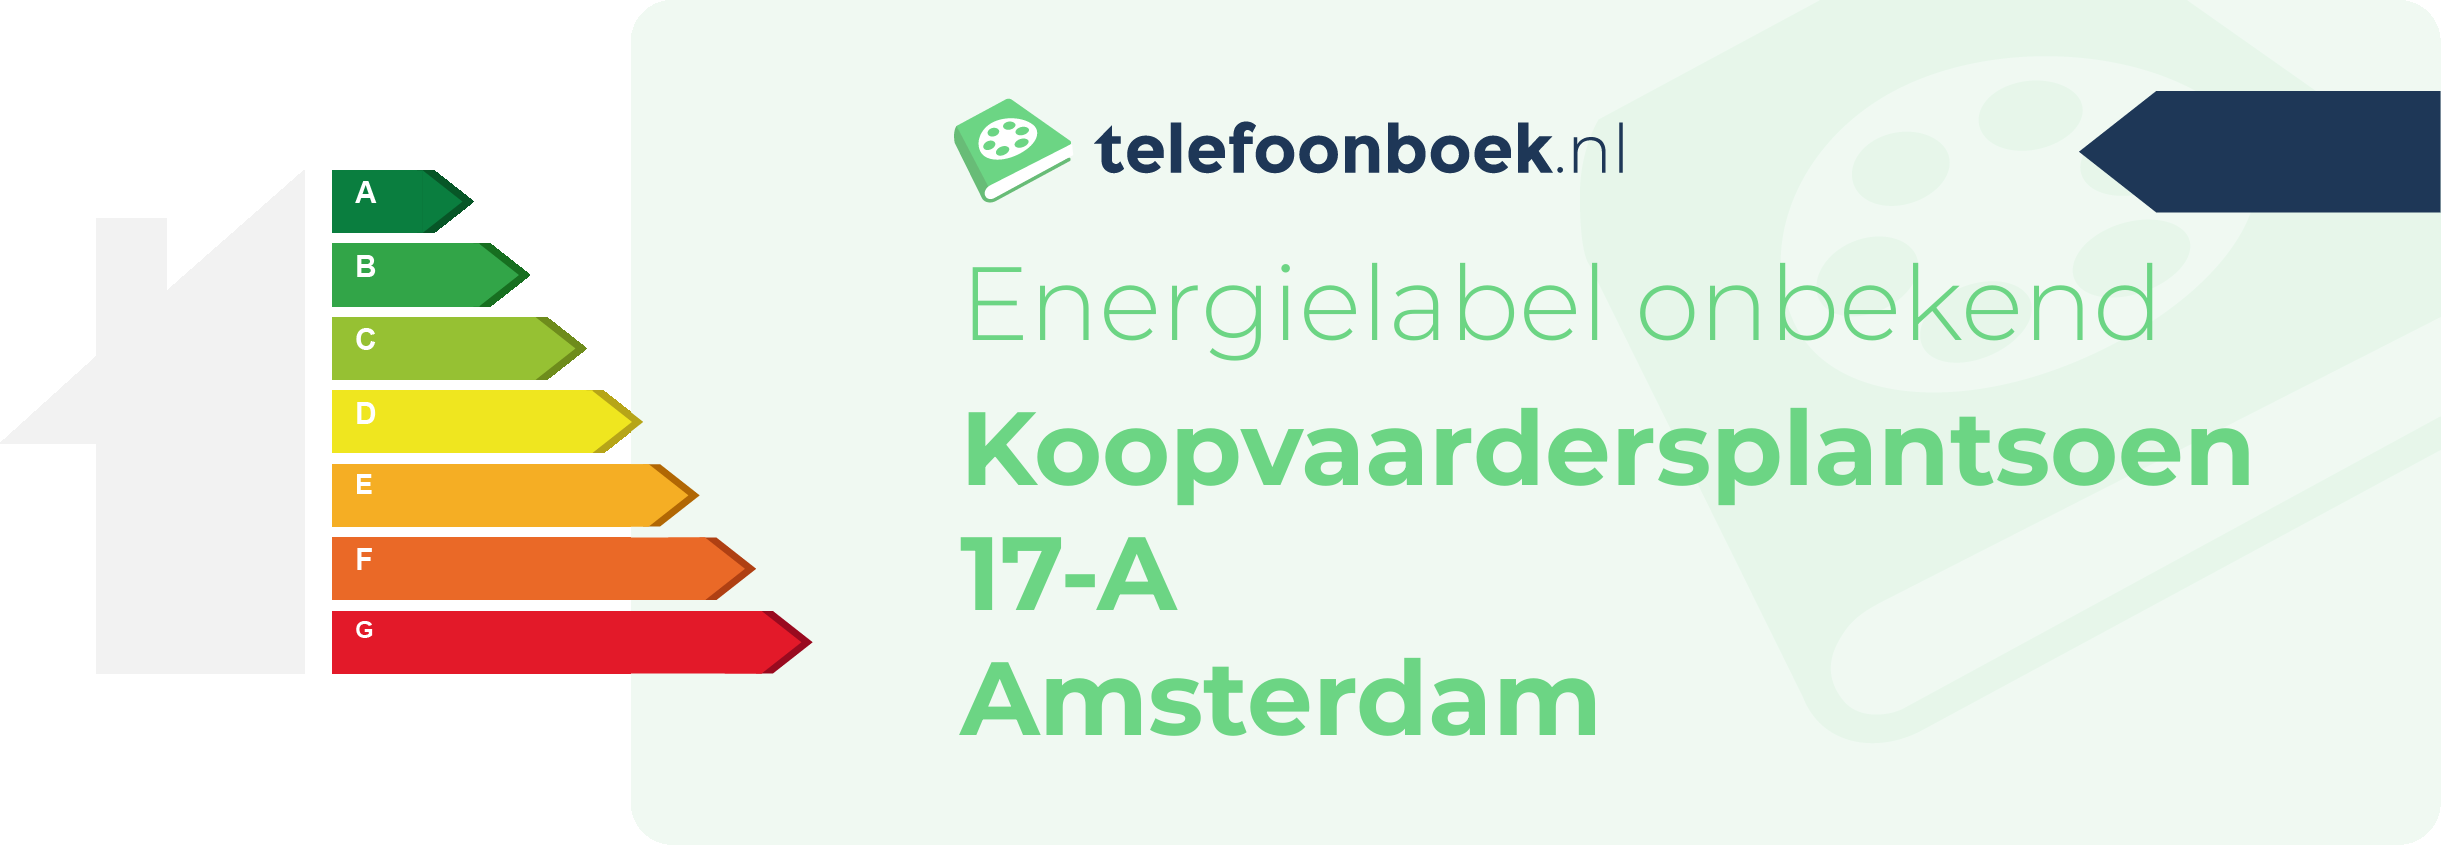 Energielabel Koopvaardersplantsoen 17-A Amsterdam